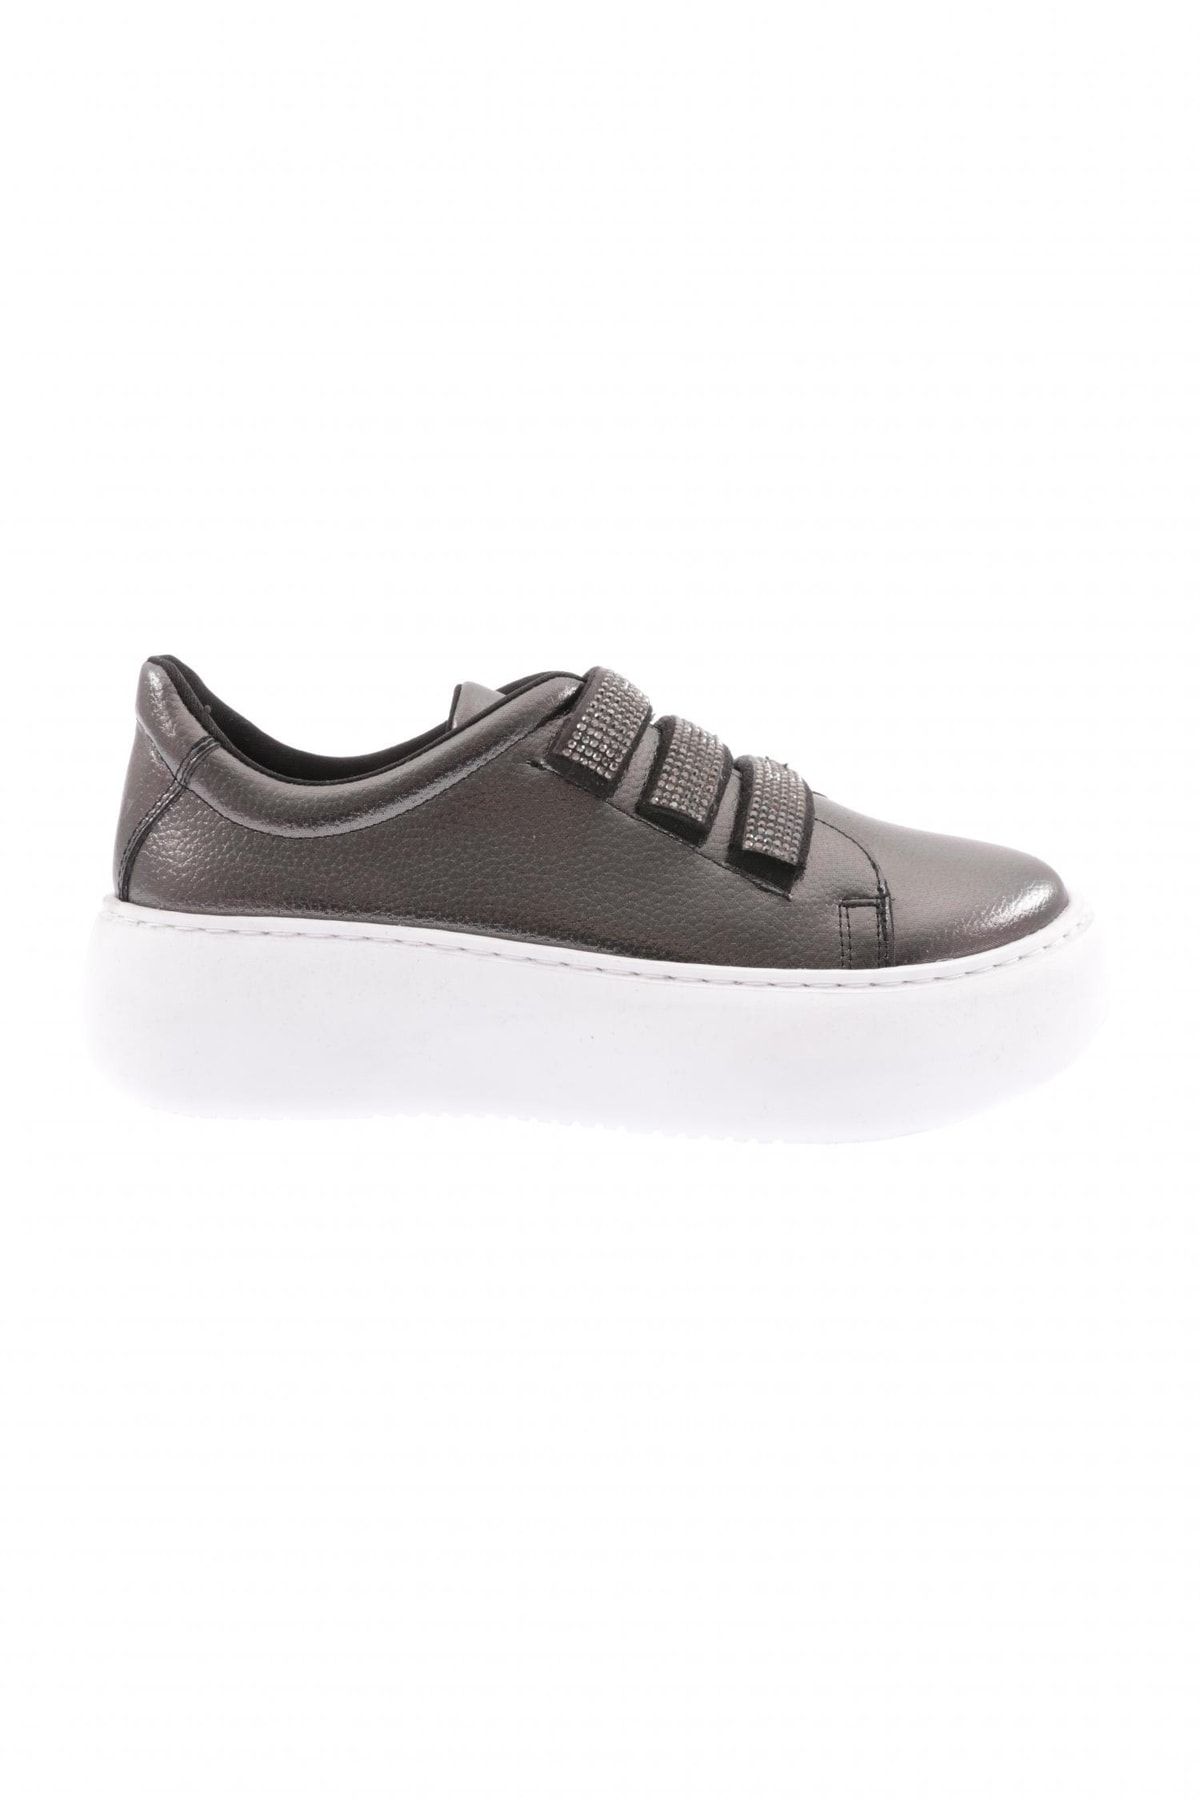 Dgn Metalik - 878-23y Kadin Cirtli Bantlari Silver Taşli Sneaker Ayakkabı